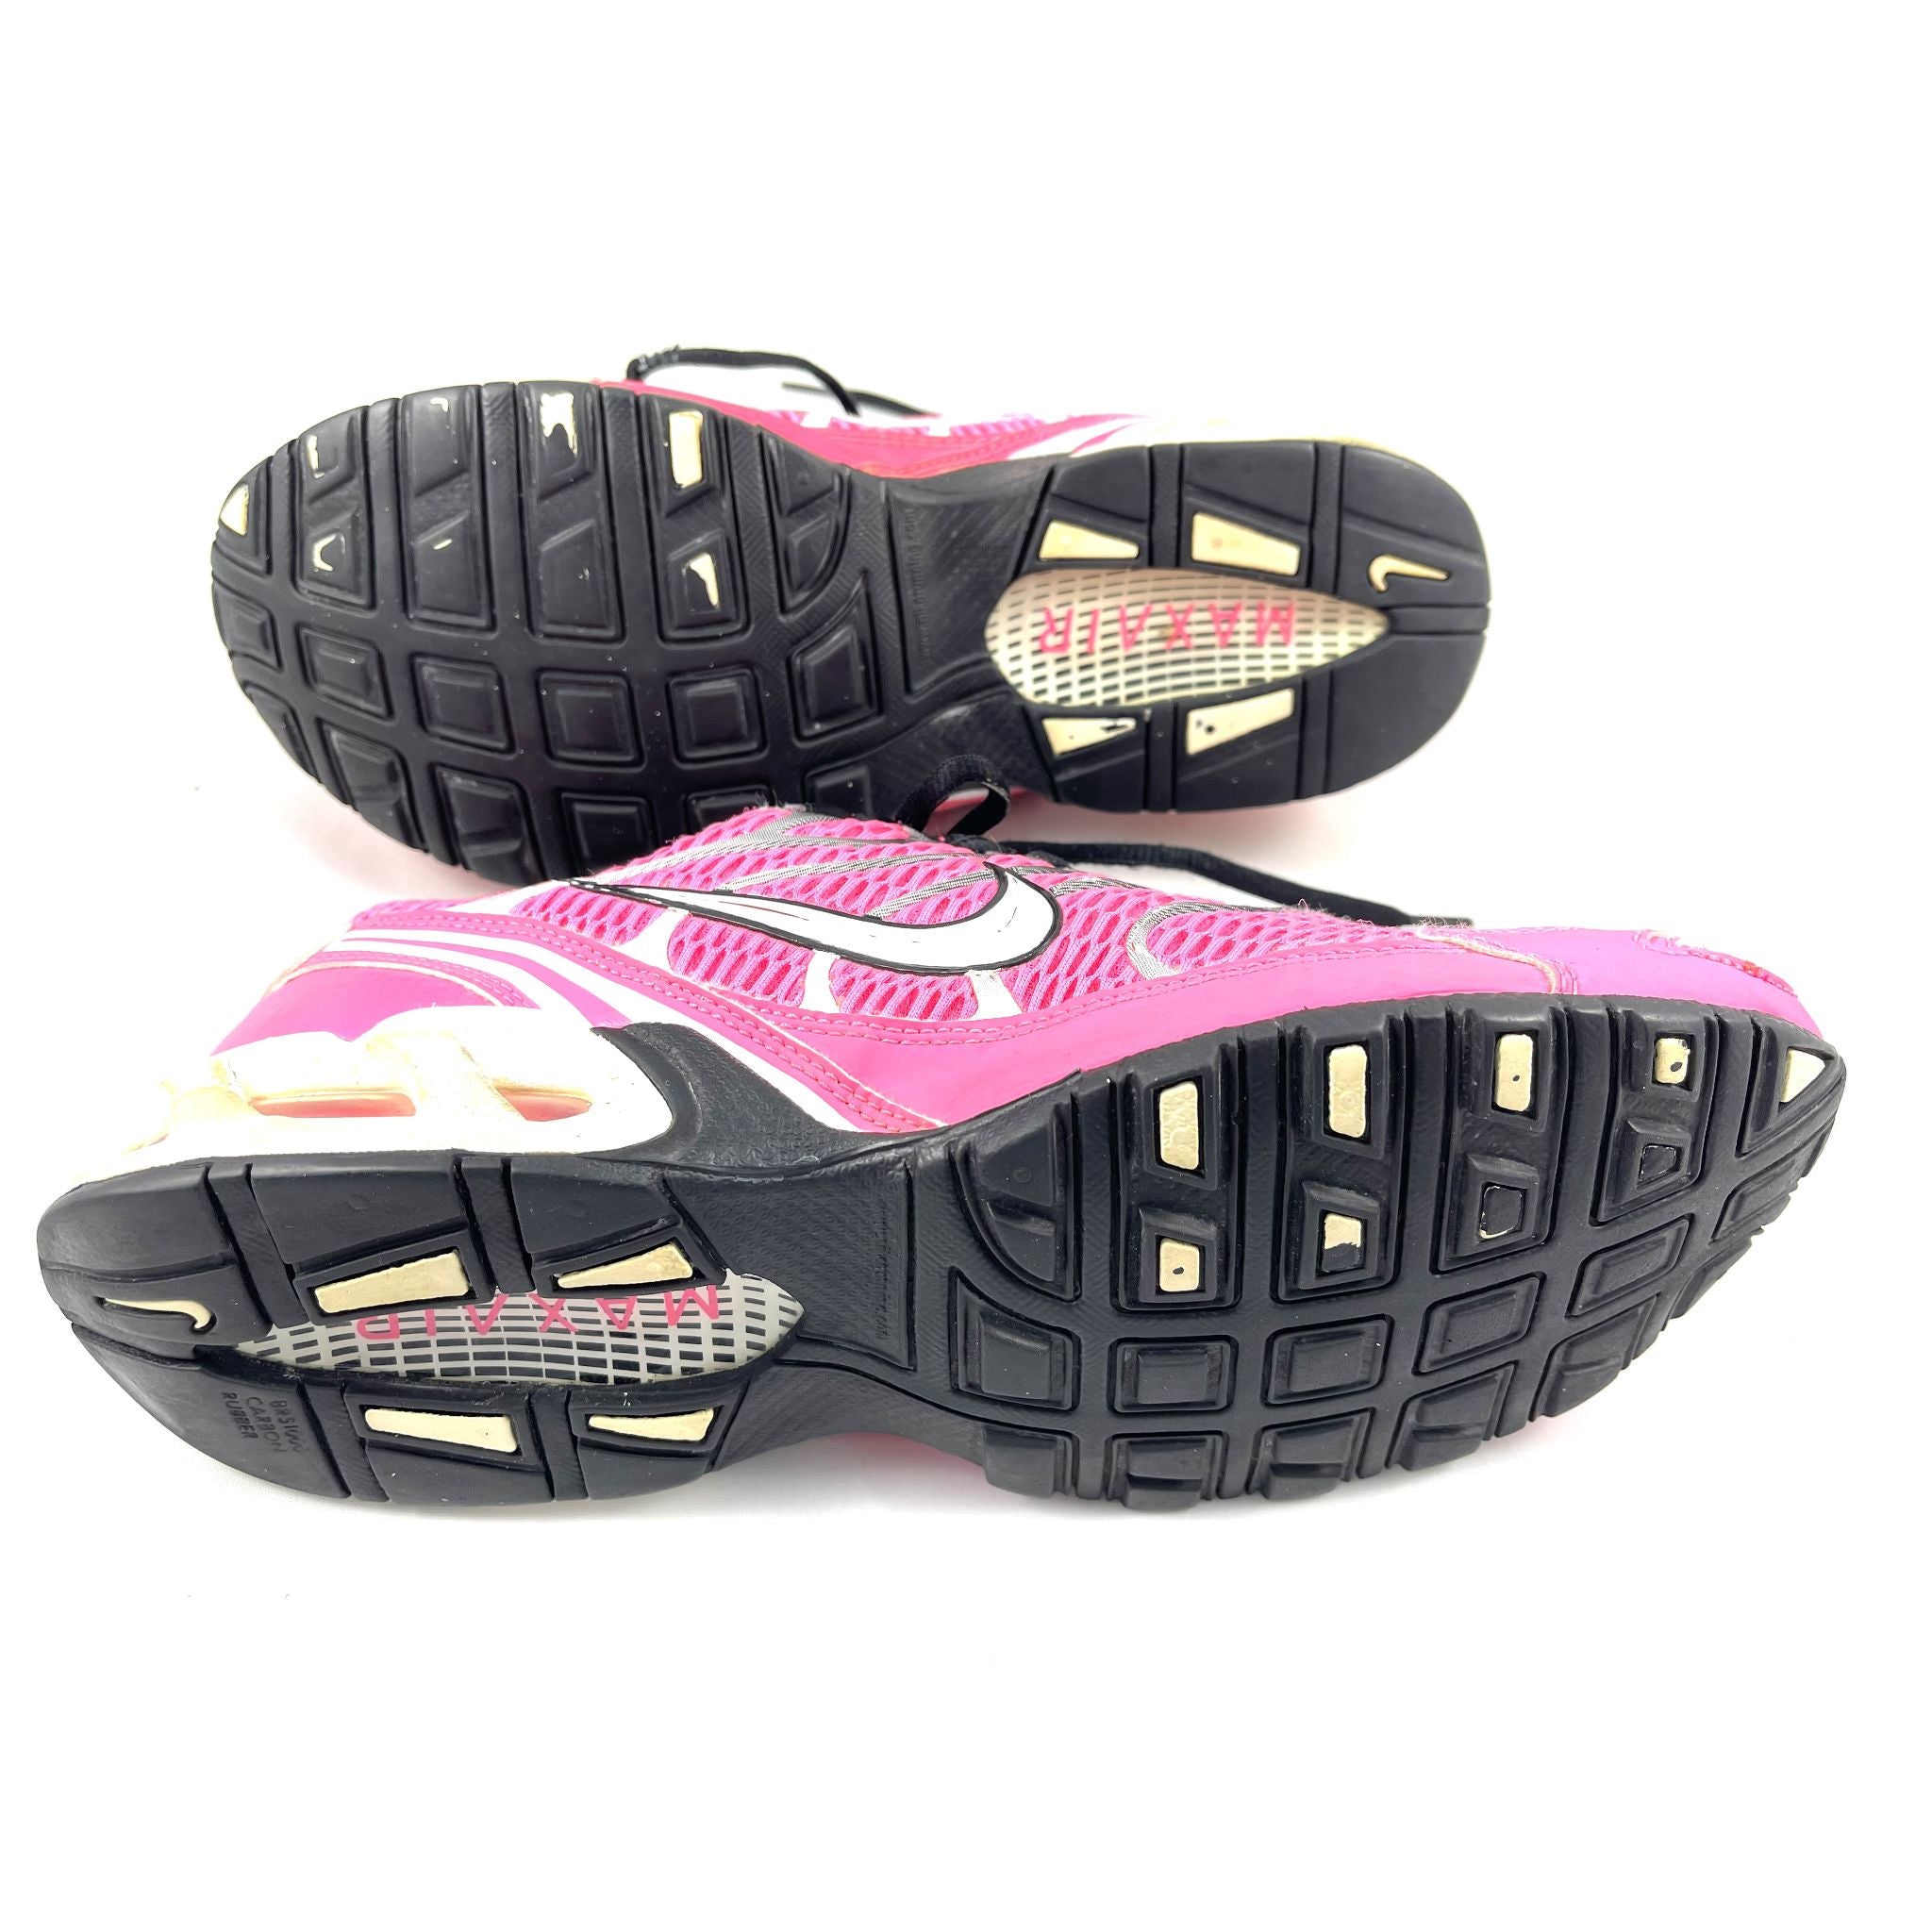 Pink Nike Air Max  Joggers